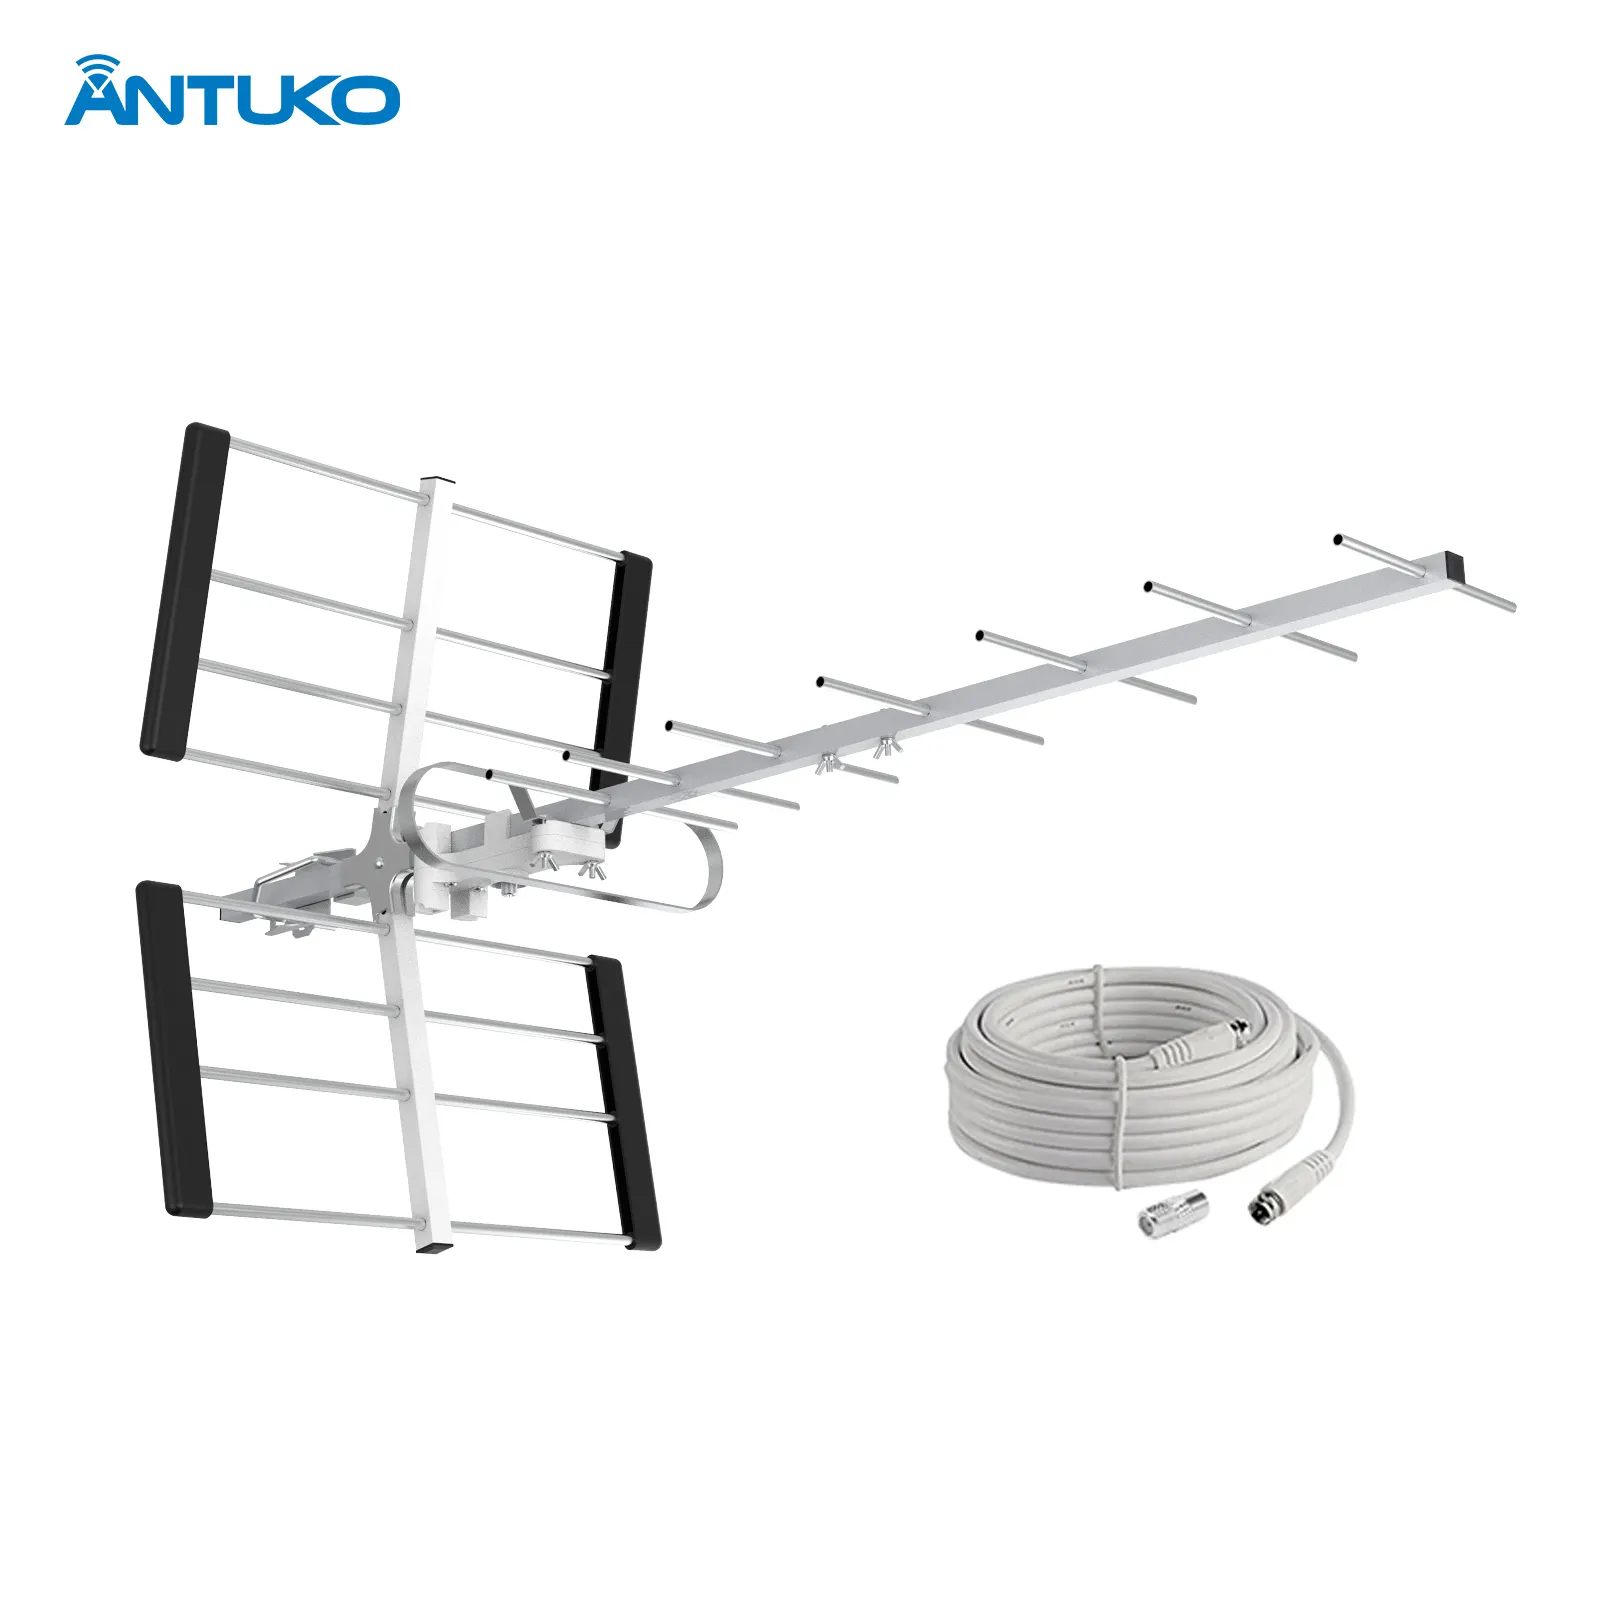 Antuko Free 4K 1080P Antena de TV interior con recepción VHF/UHF de alta ganancia Alto rango 3600 millas Antena Yagi para exteriores Característica 4K